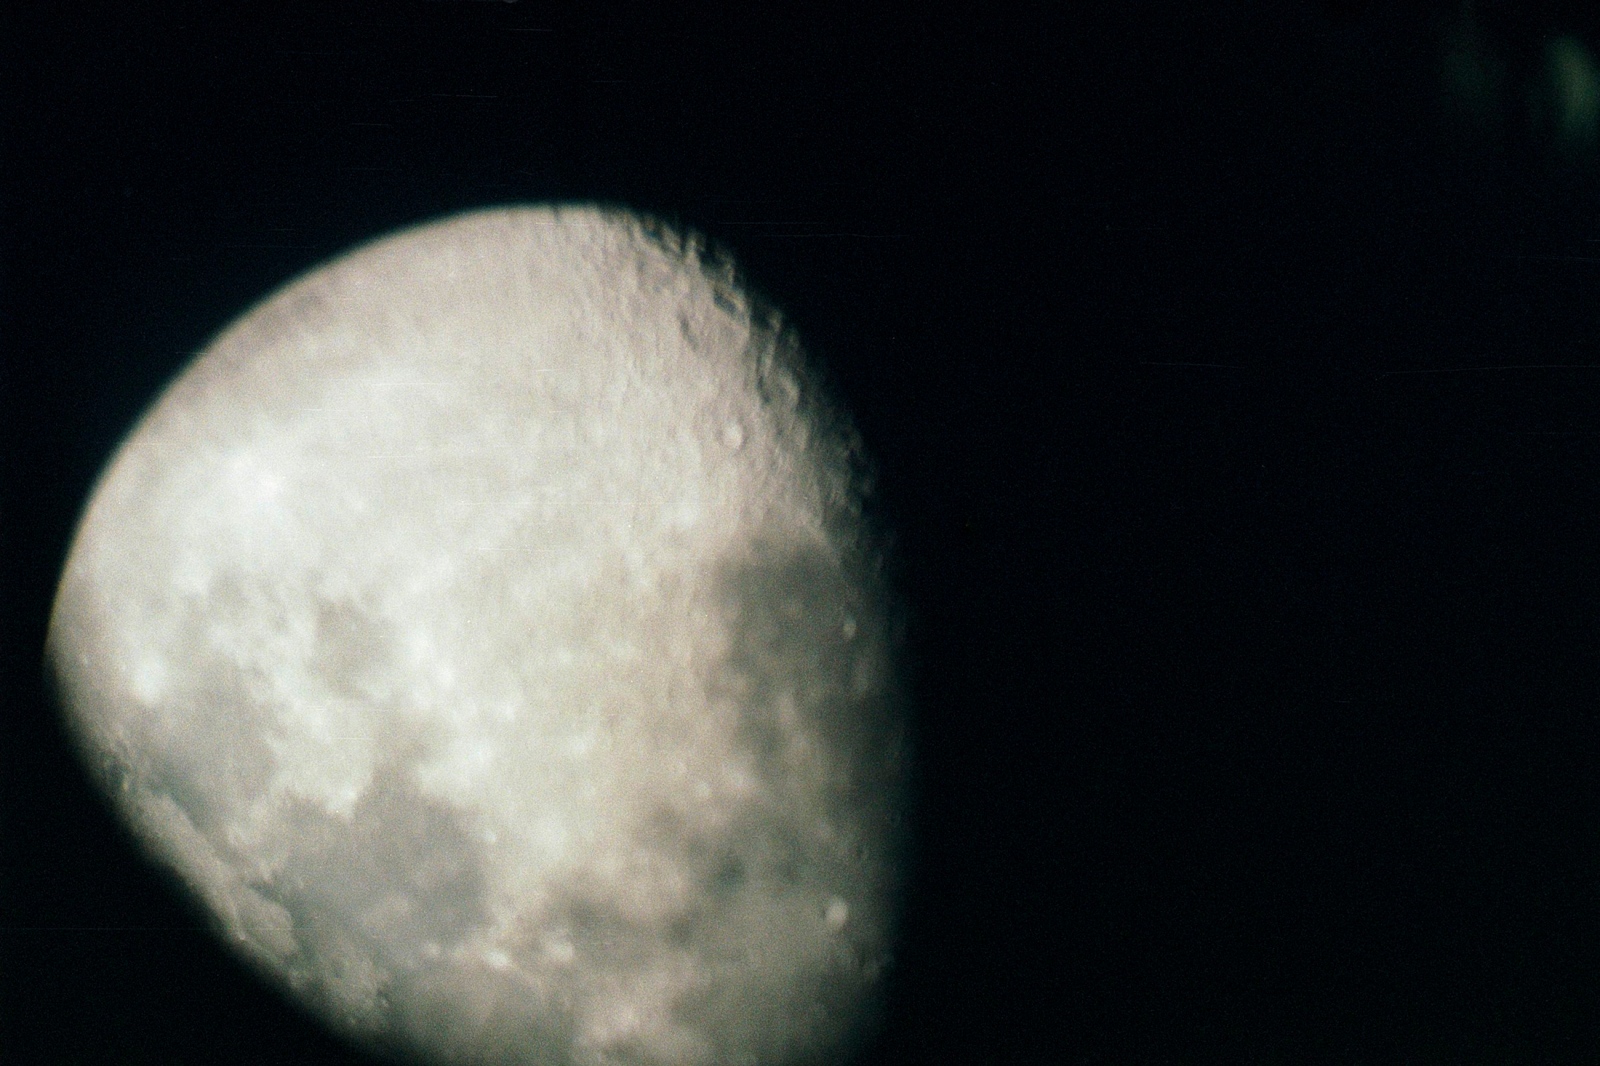 The moon in telescope, Brooklyn, NY